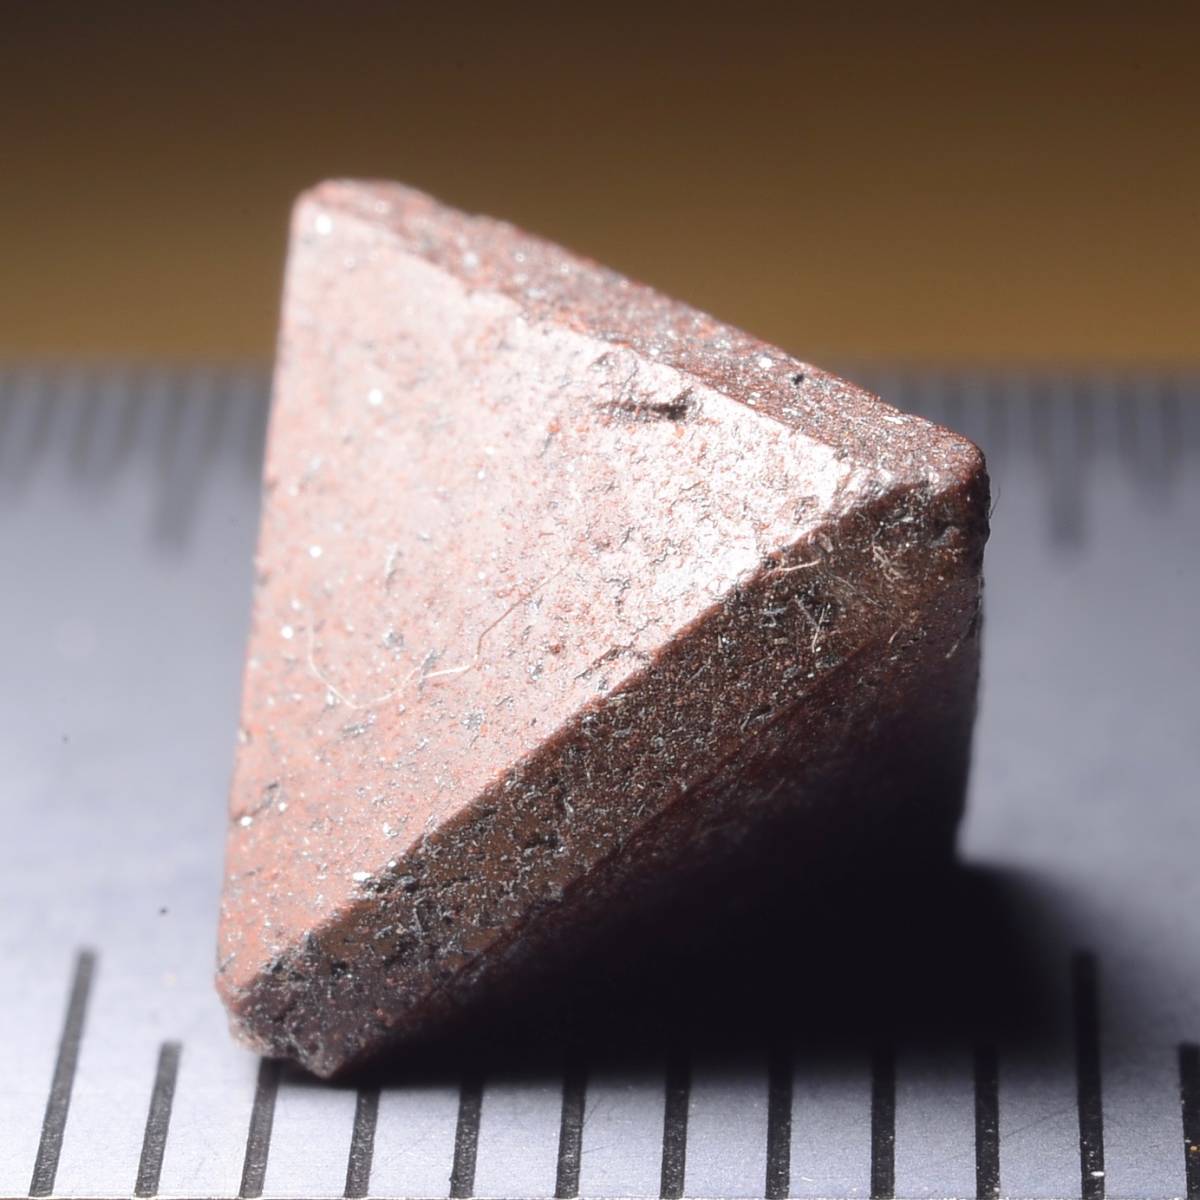 ズニアイト Zunyite ★ イラン産 ズニ石 鉱物標本 原石 宝石 鉱石 天然石 ルース 12